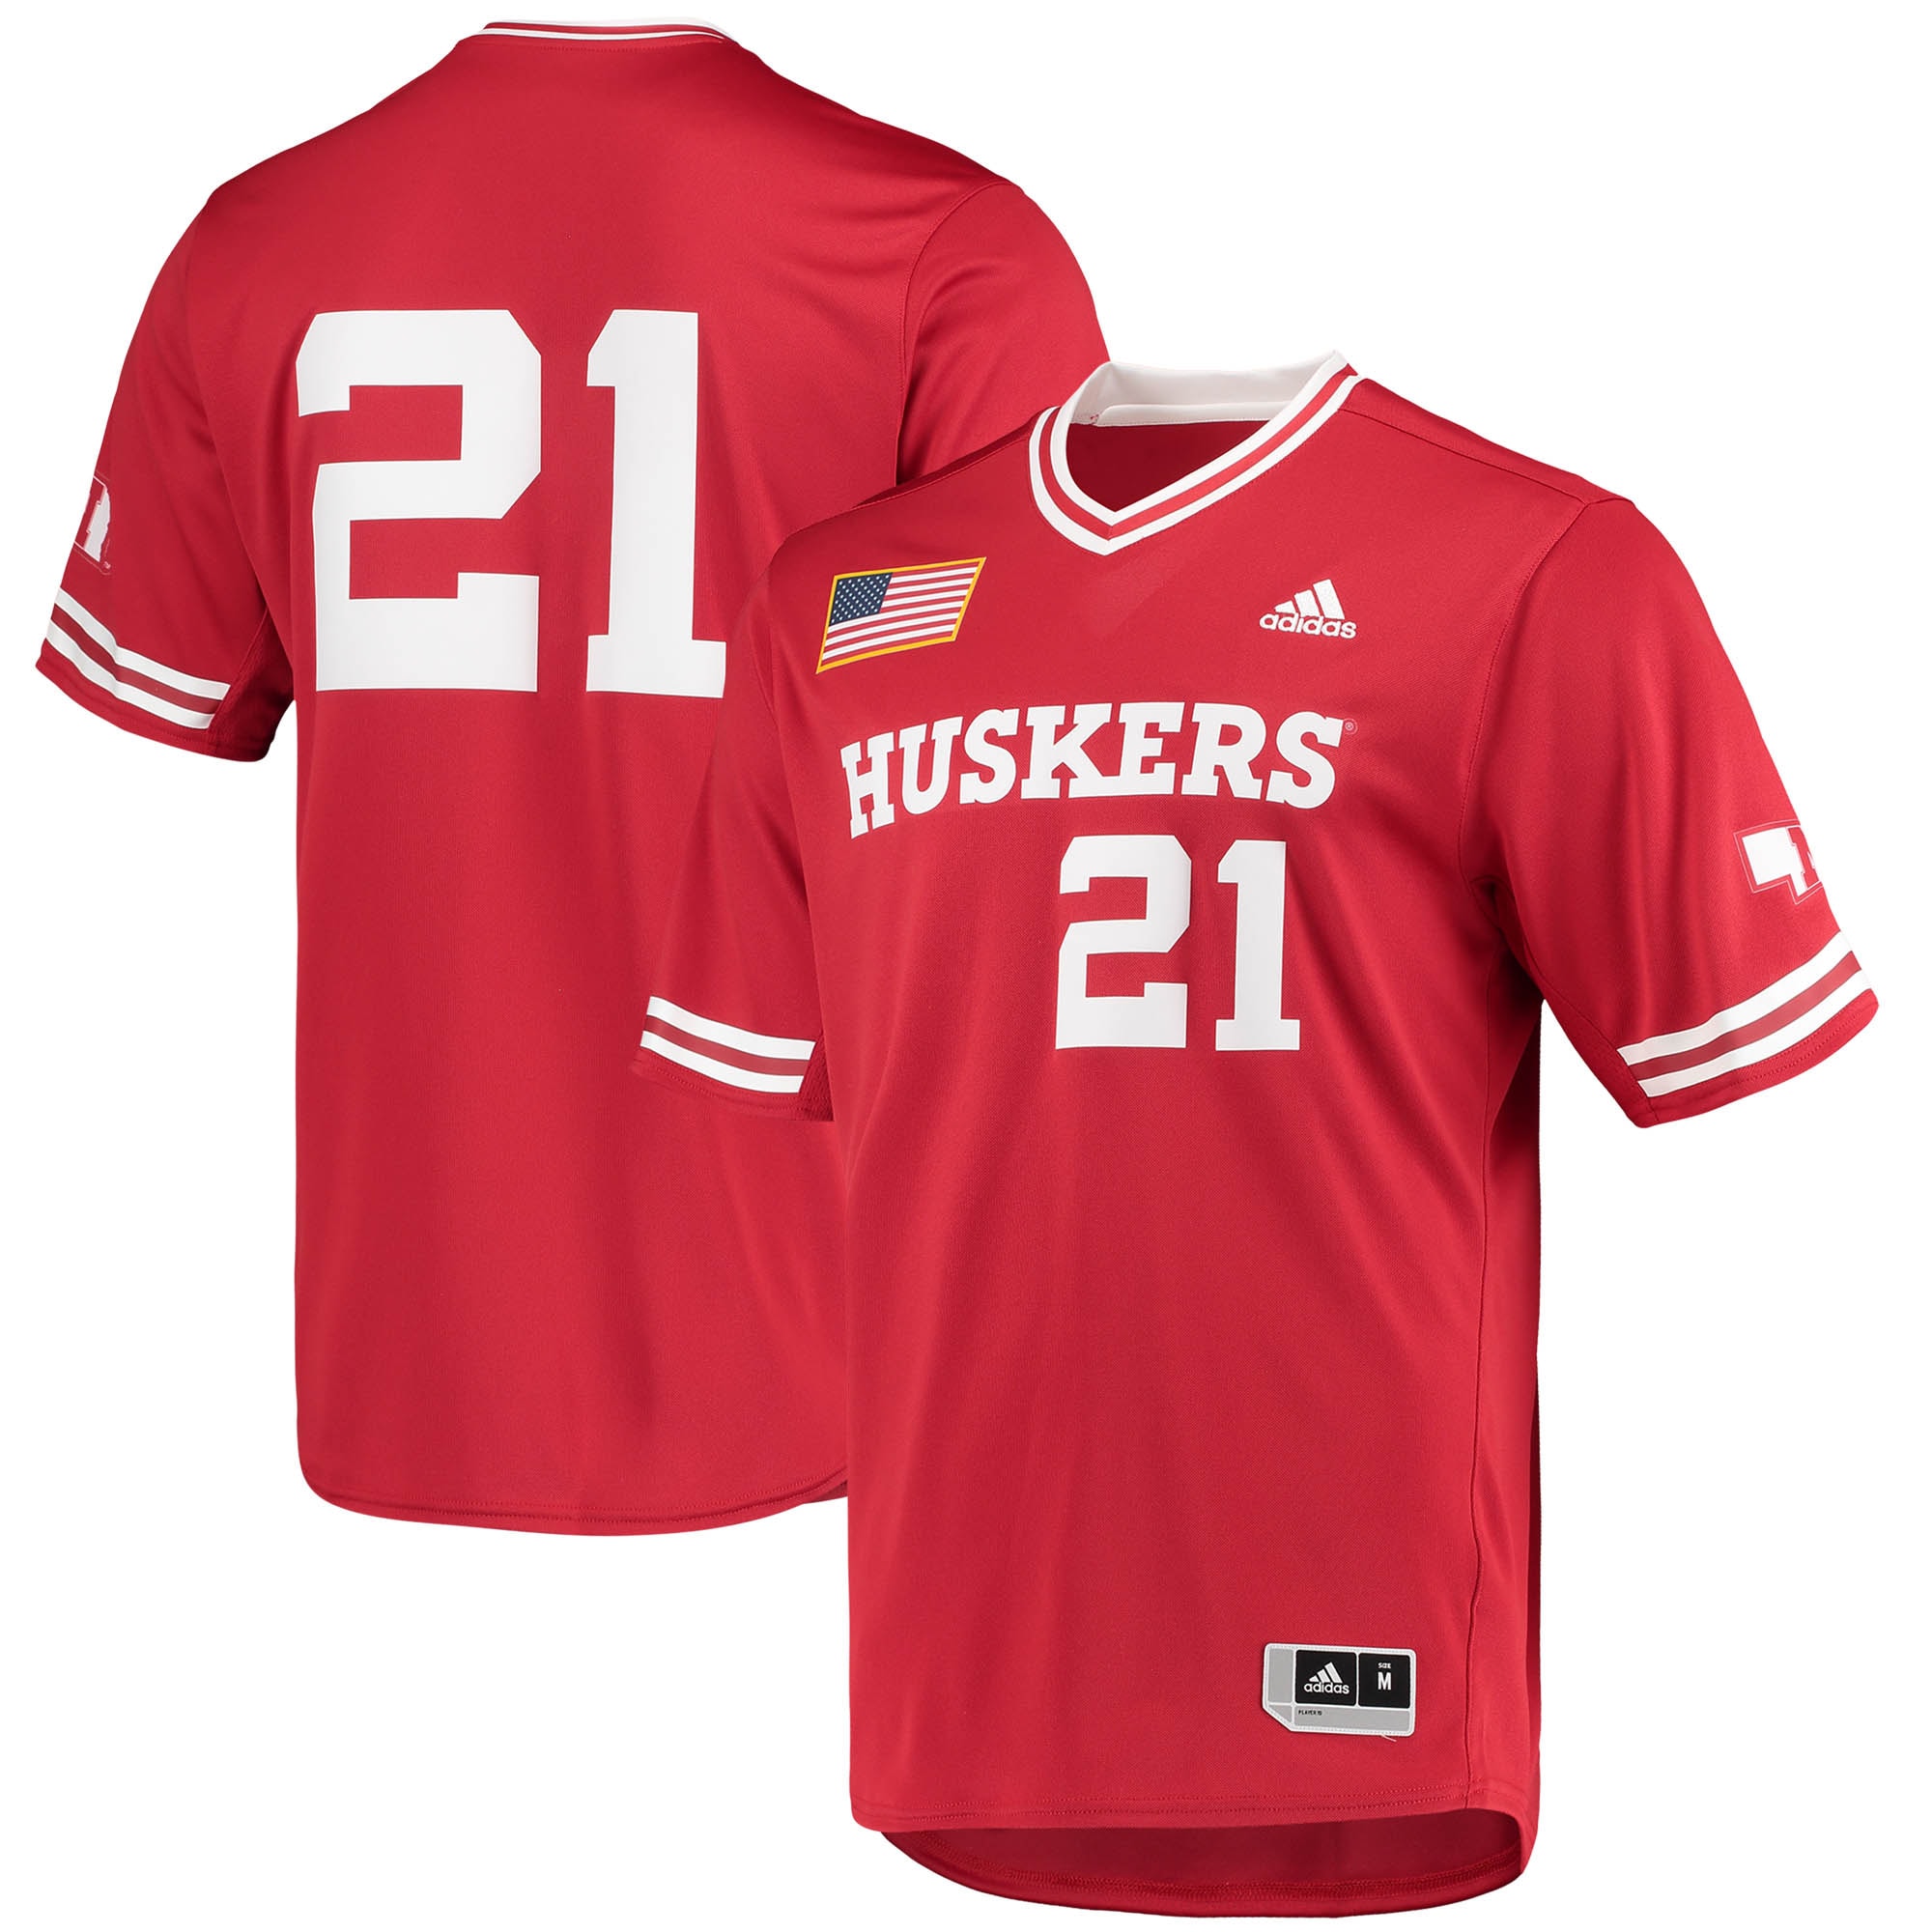 Nebraska Huskers   Replica V-Neck Baseball Jersey - Scarlet For Youth Women Men